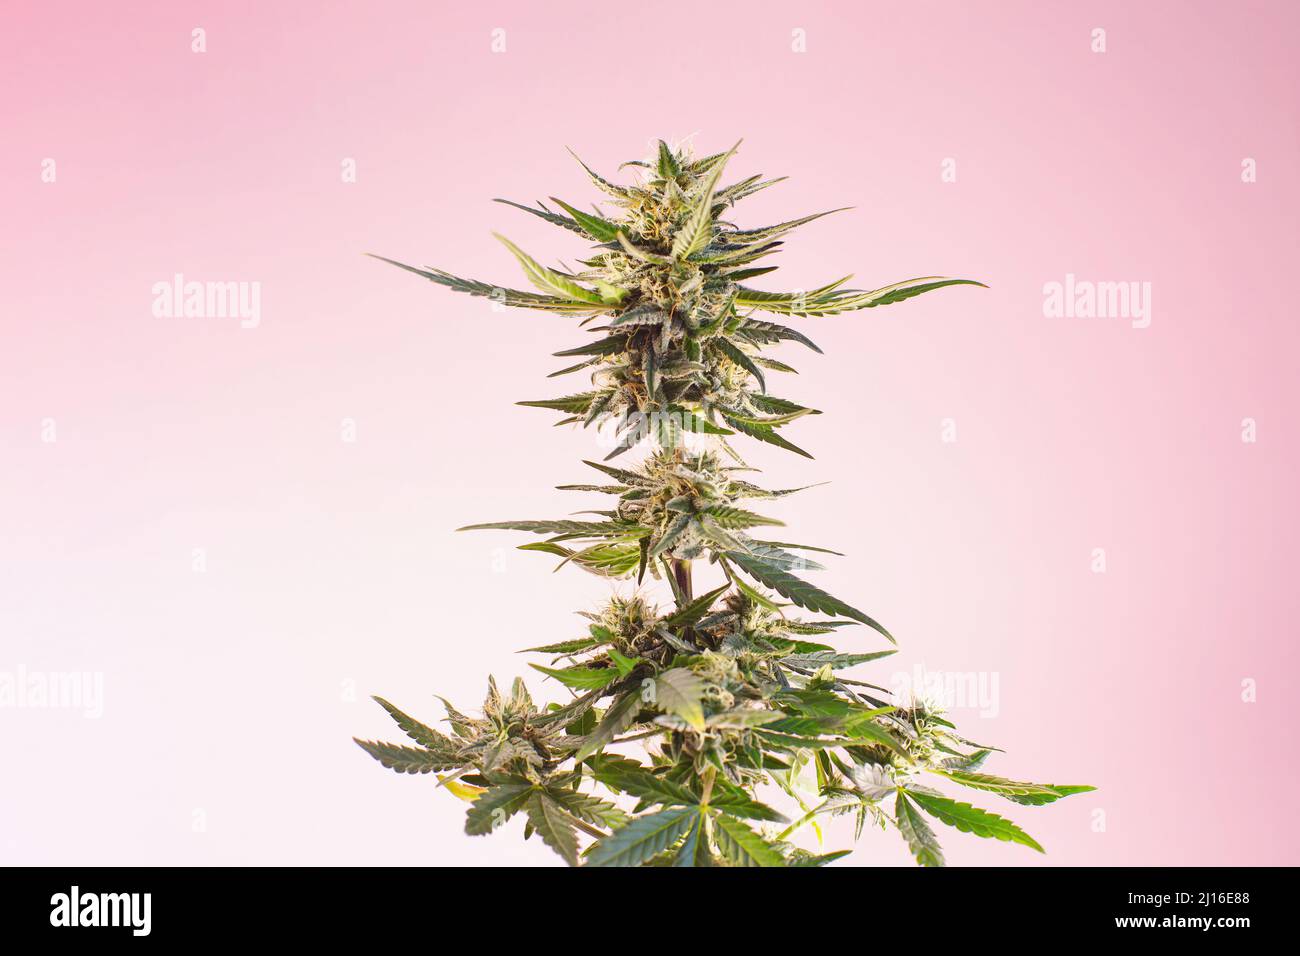 Pianta medicinale di cannabis su sfondo rosa beige chiaro. Canapa di cannabis fiorita marijuana in un nuovo stile moderno ed estetico per medici e cosmetici Foto Stock